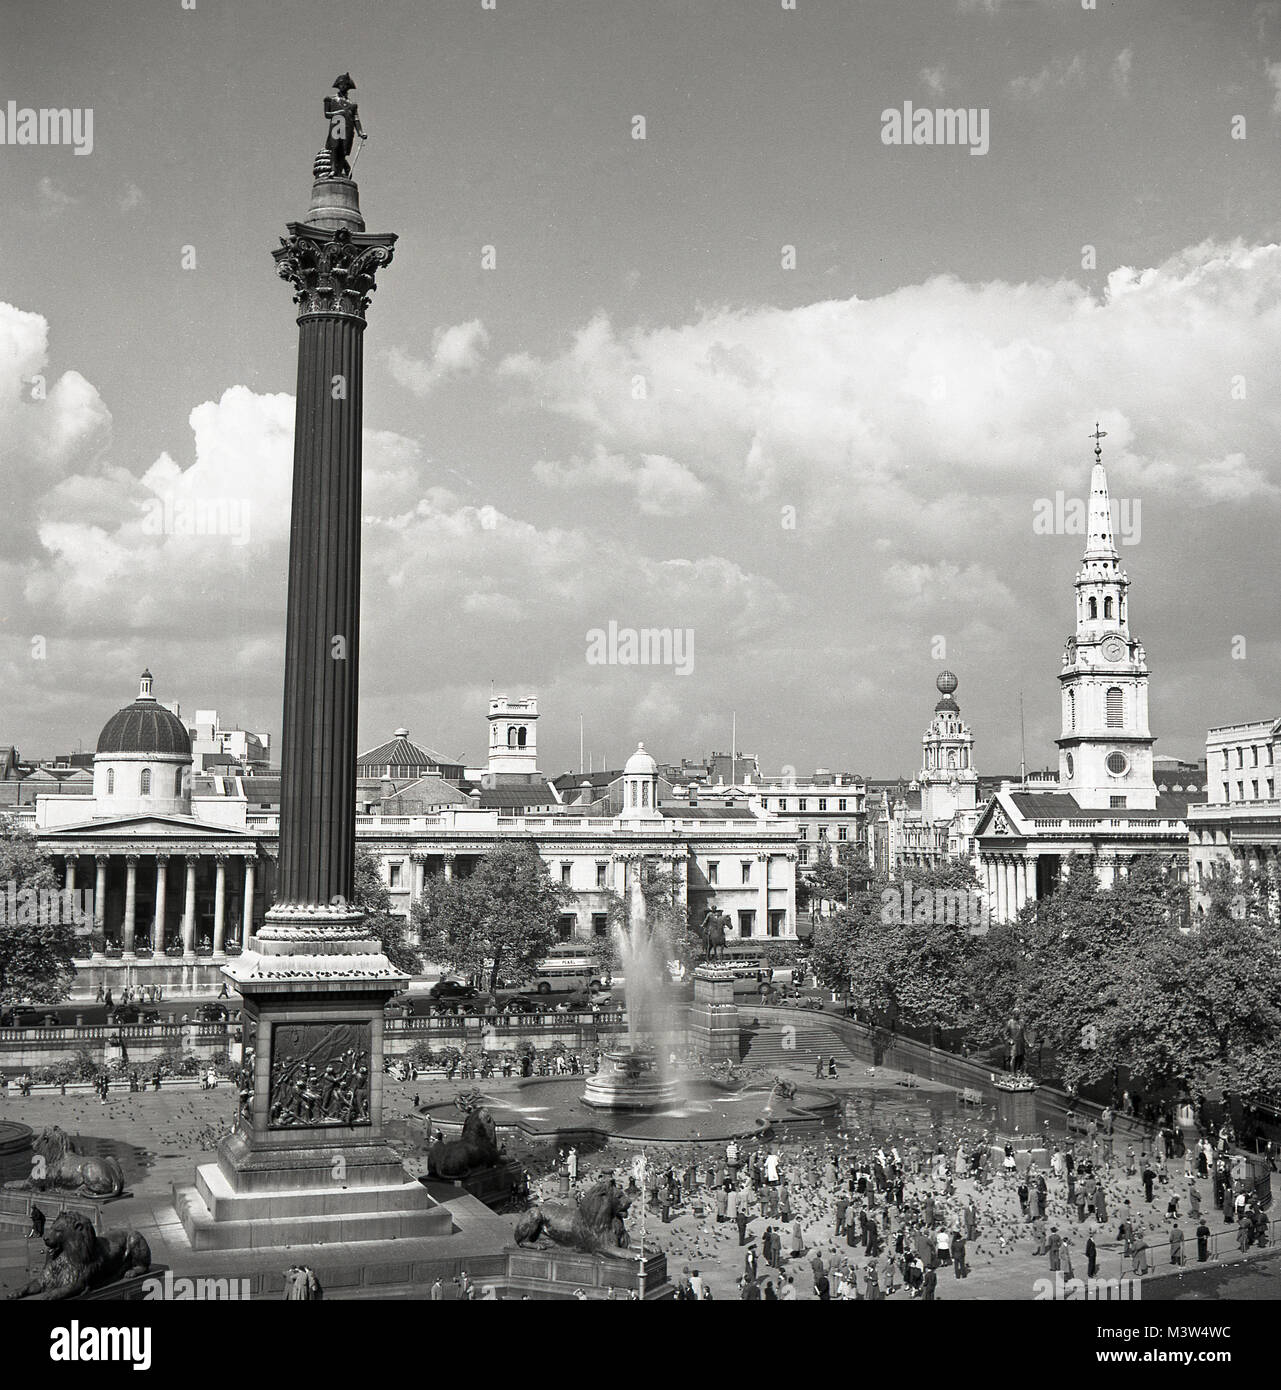 Années 1950, historique, dans cette photo depuis le début des années 1950 par J Allan paiement nous voir une vue de l'espace public du centre de Londres, Trafalgar Square et le monument dominant, la Colonne Nelson, une statue célébrant la victoire dans les guerres napoléoniennes. Banque D'Images